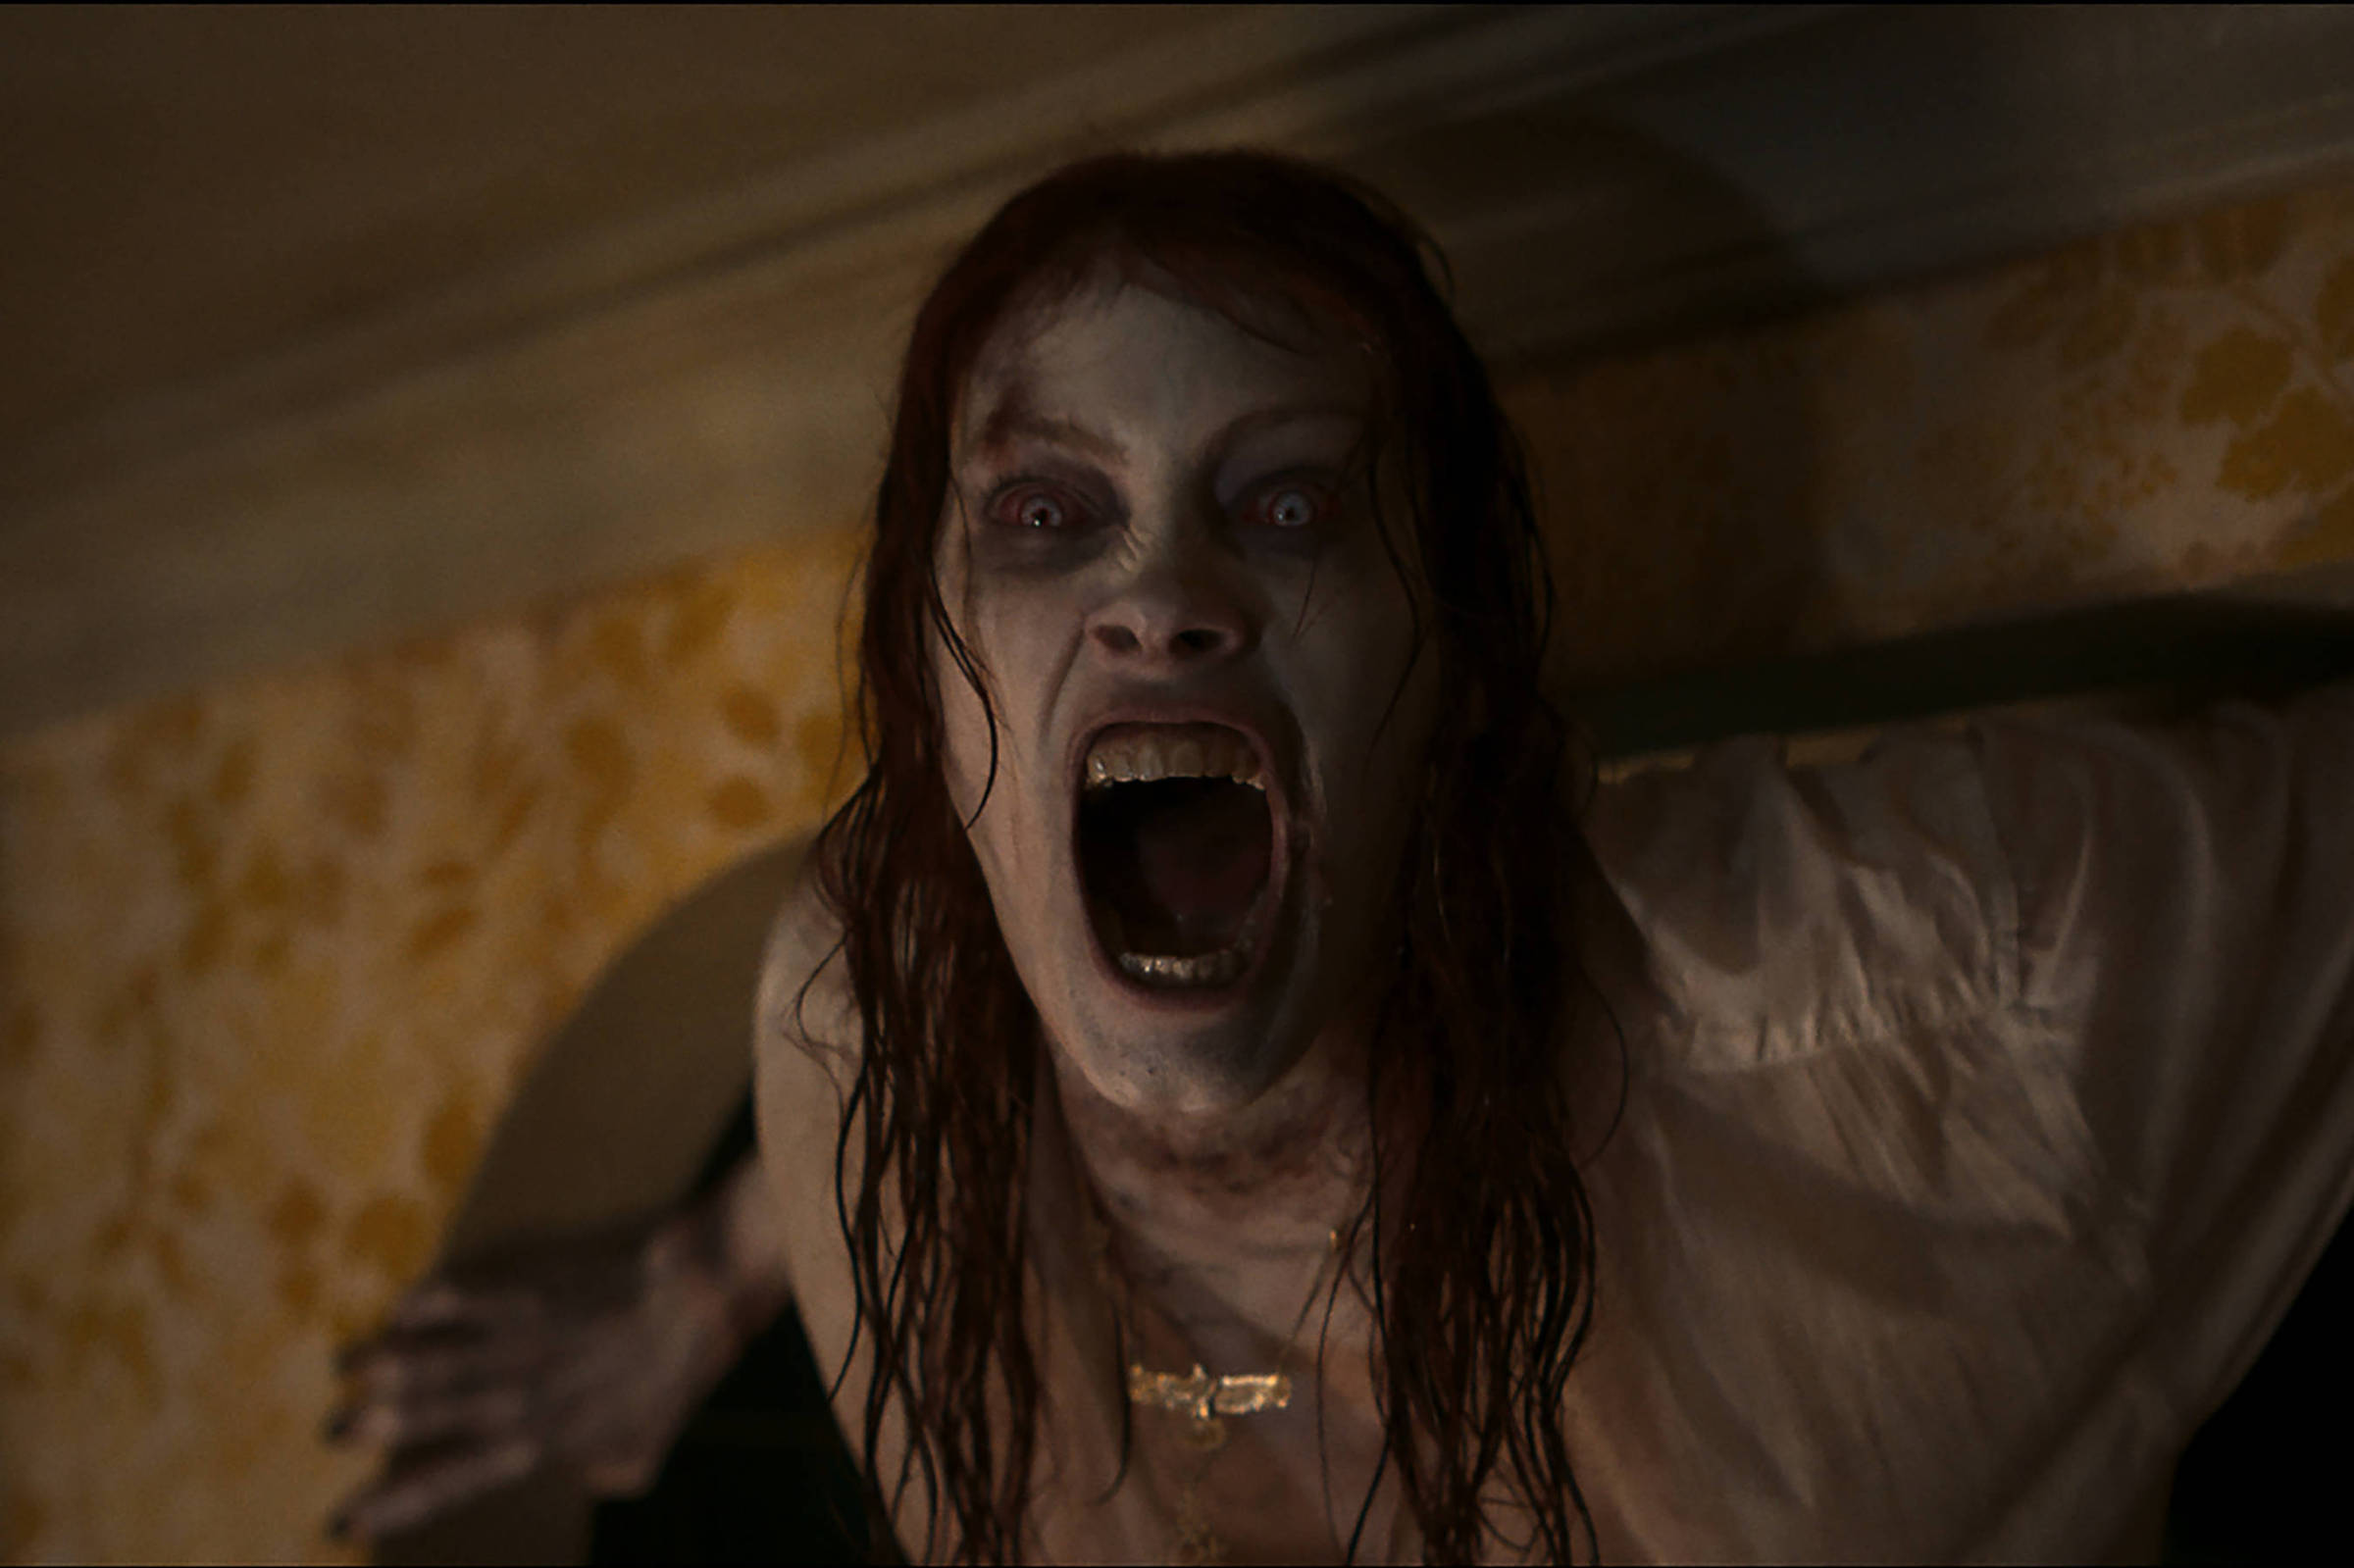 Sam Raimi confirma novo filme da franquia Evil Dead